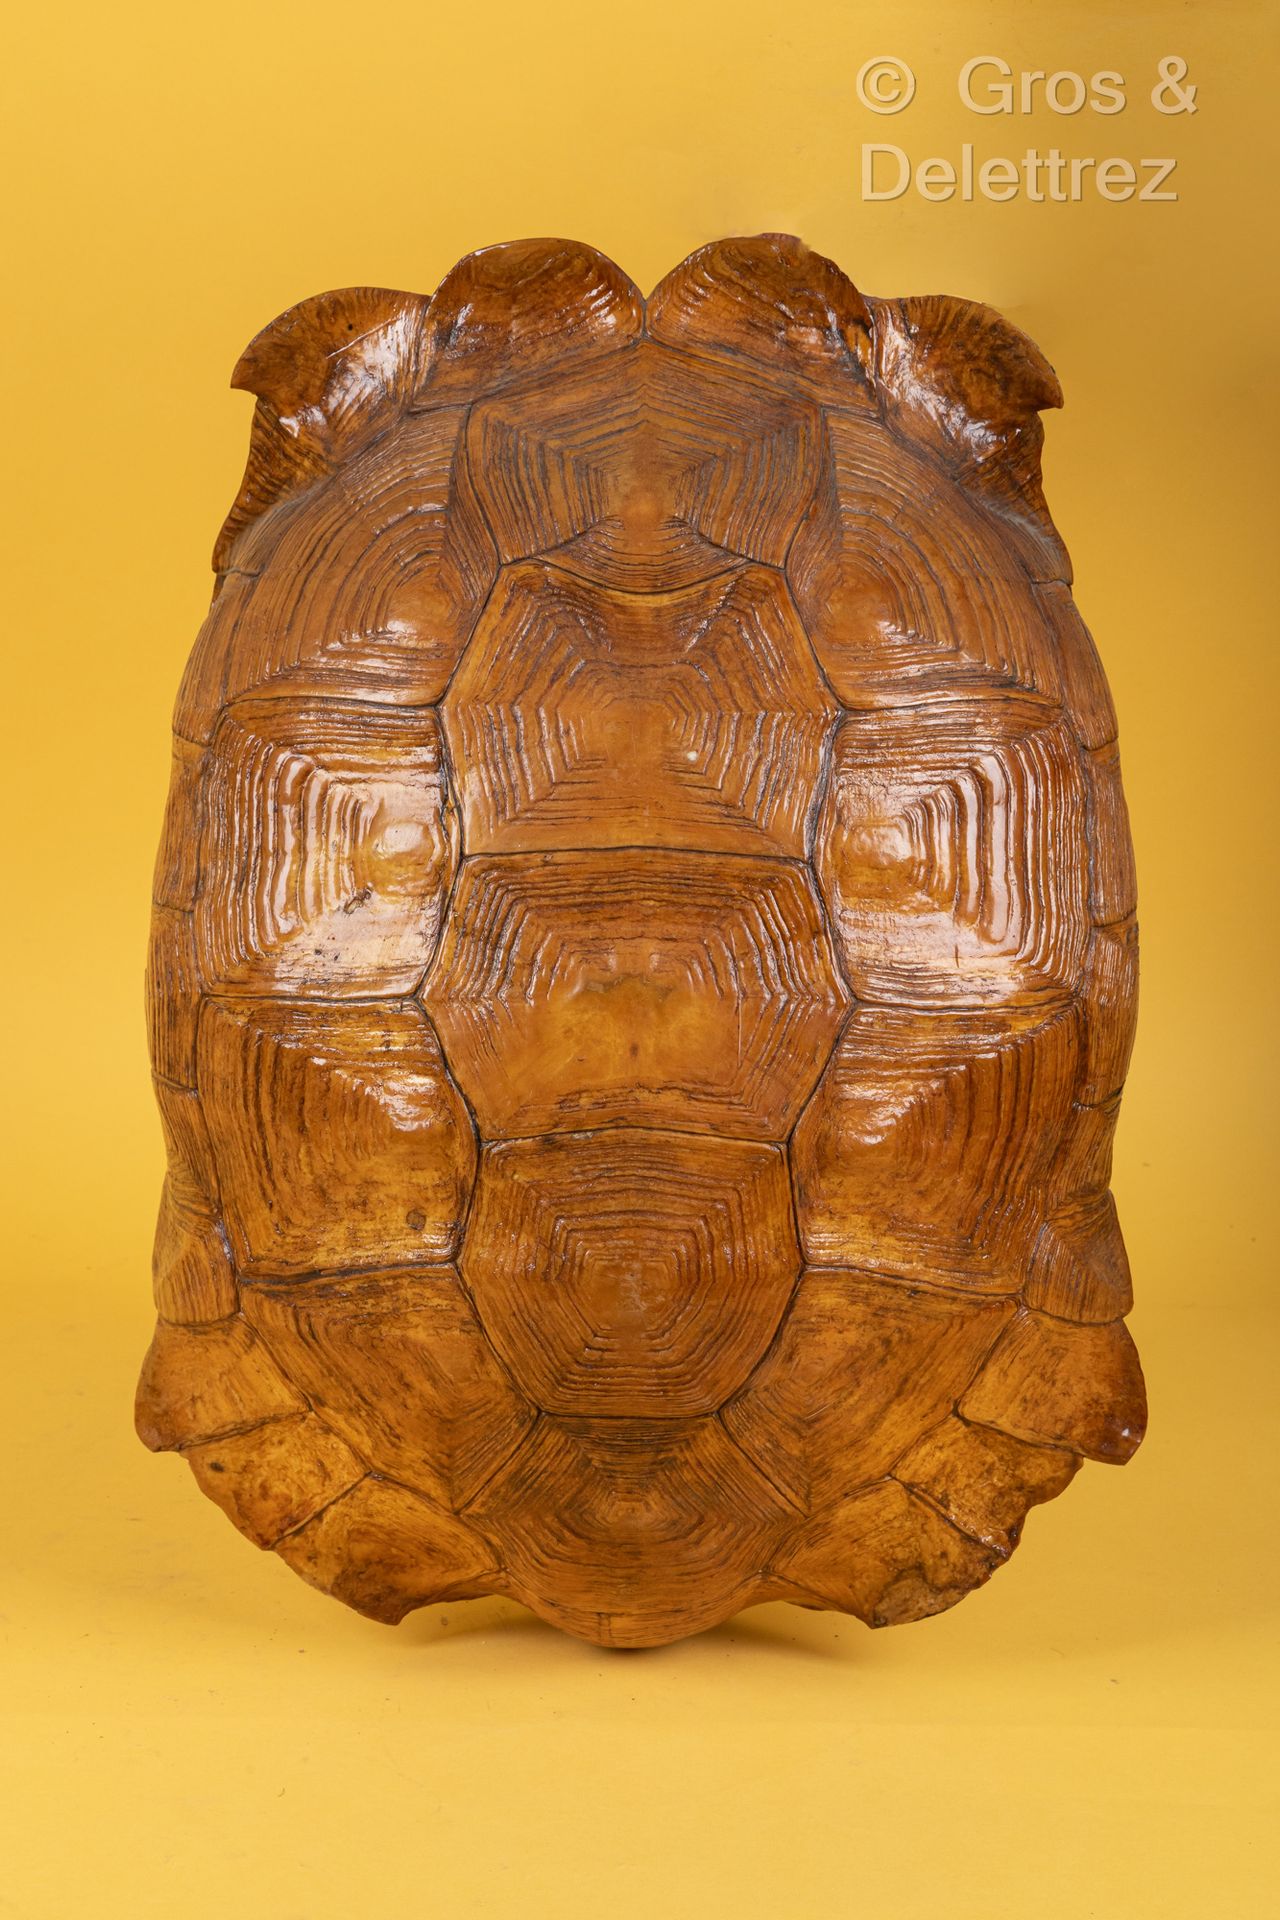 Null Carapace de tortue sillonnée ou tortue à éperon.
Long : 52,5 cm. Vernie.